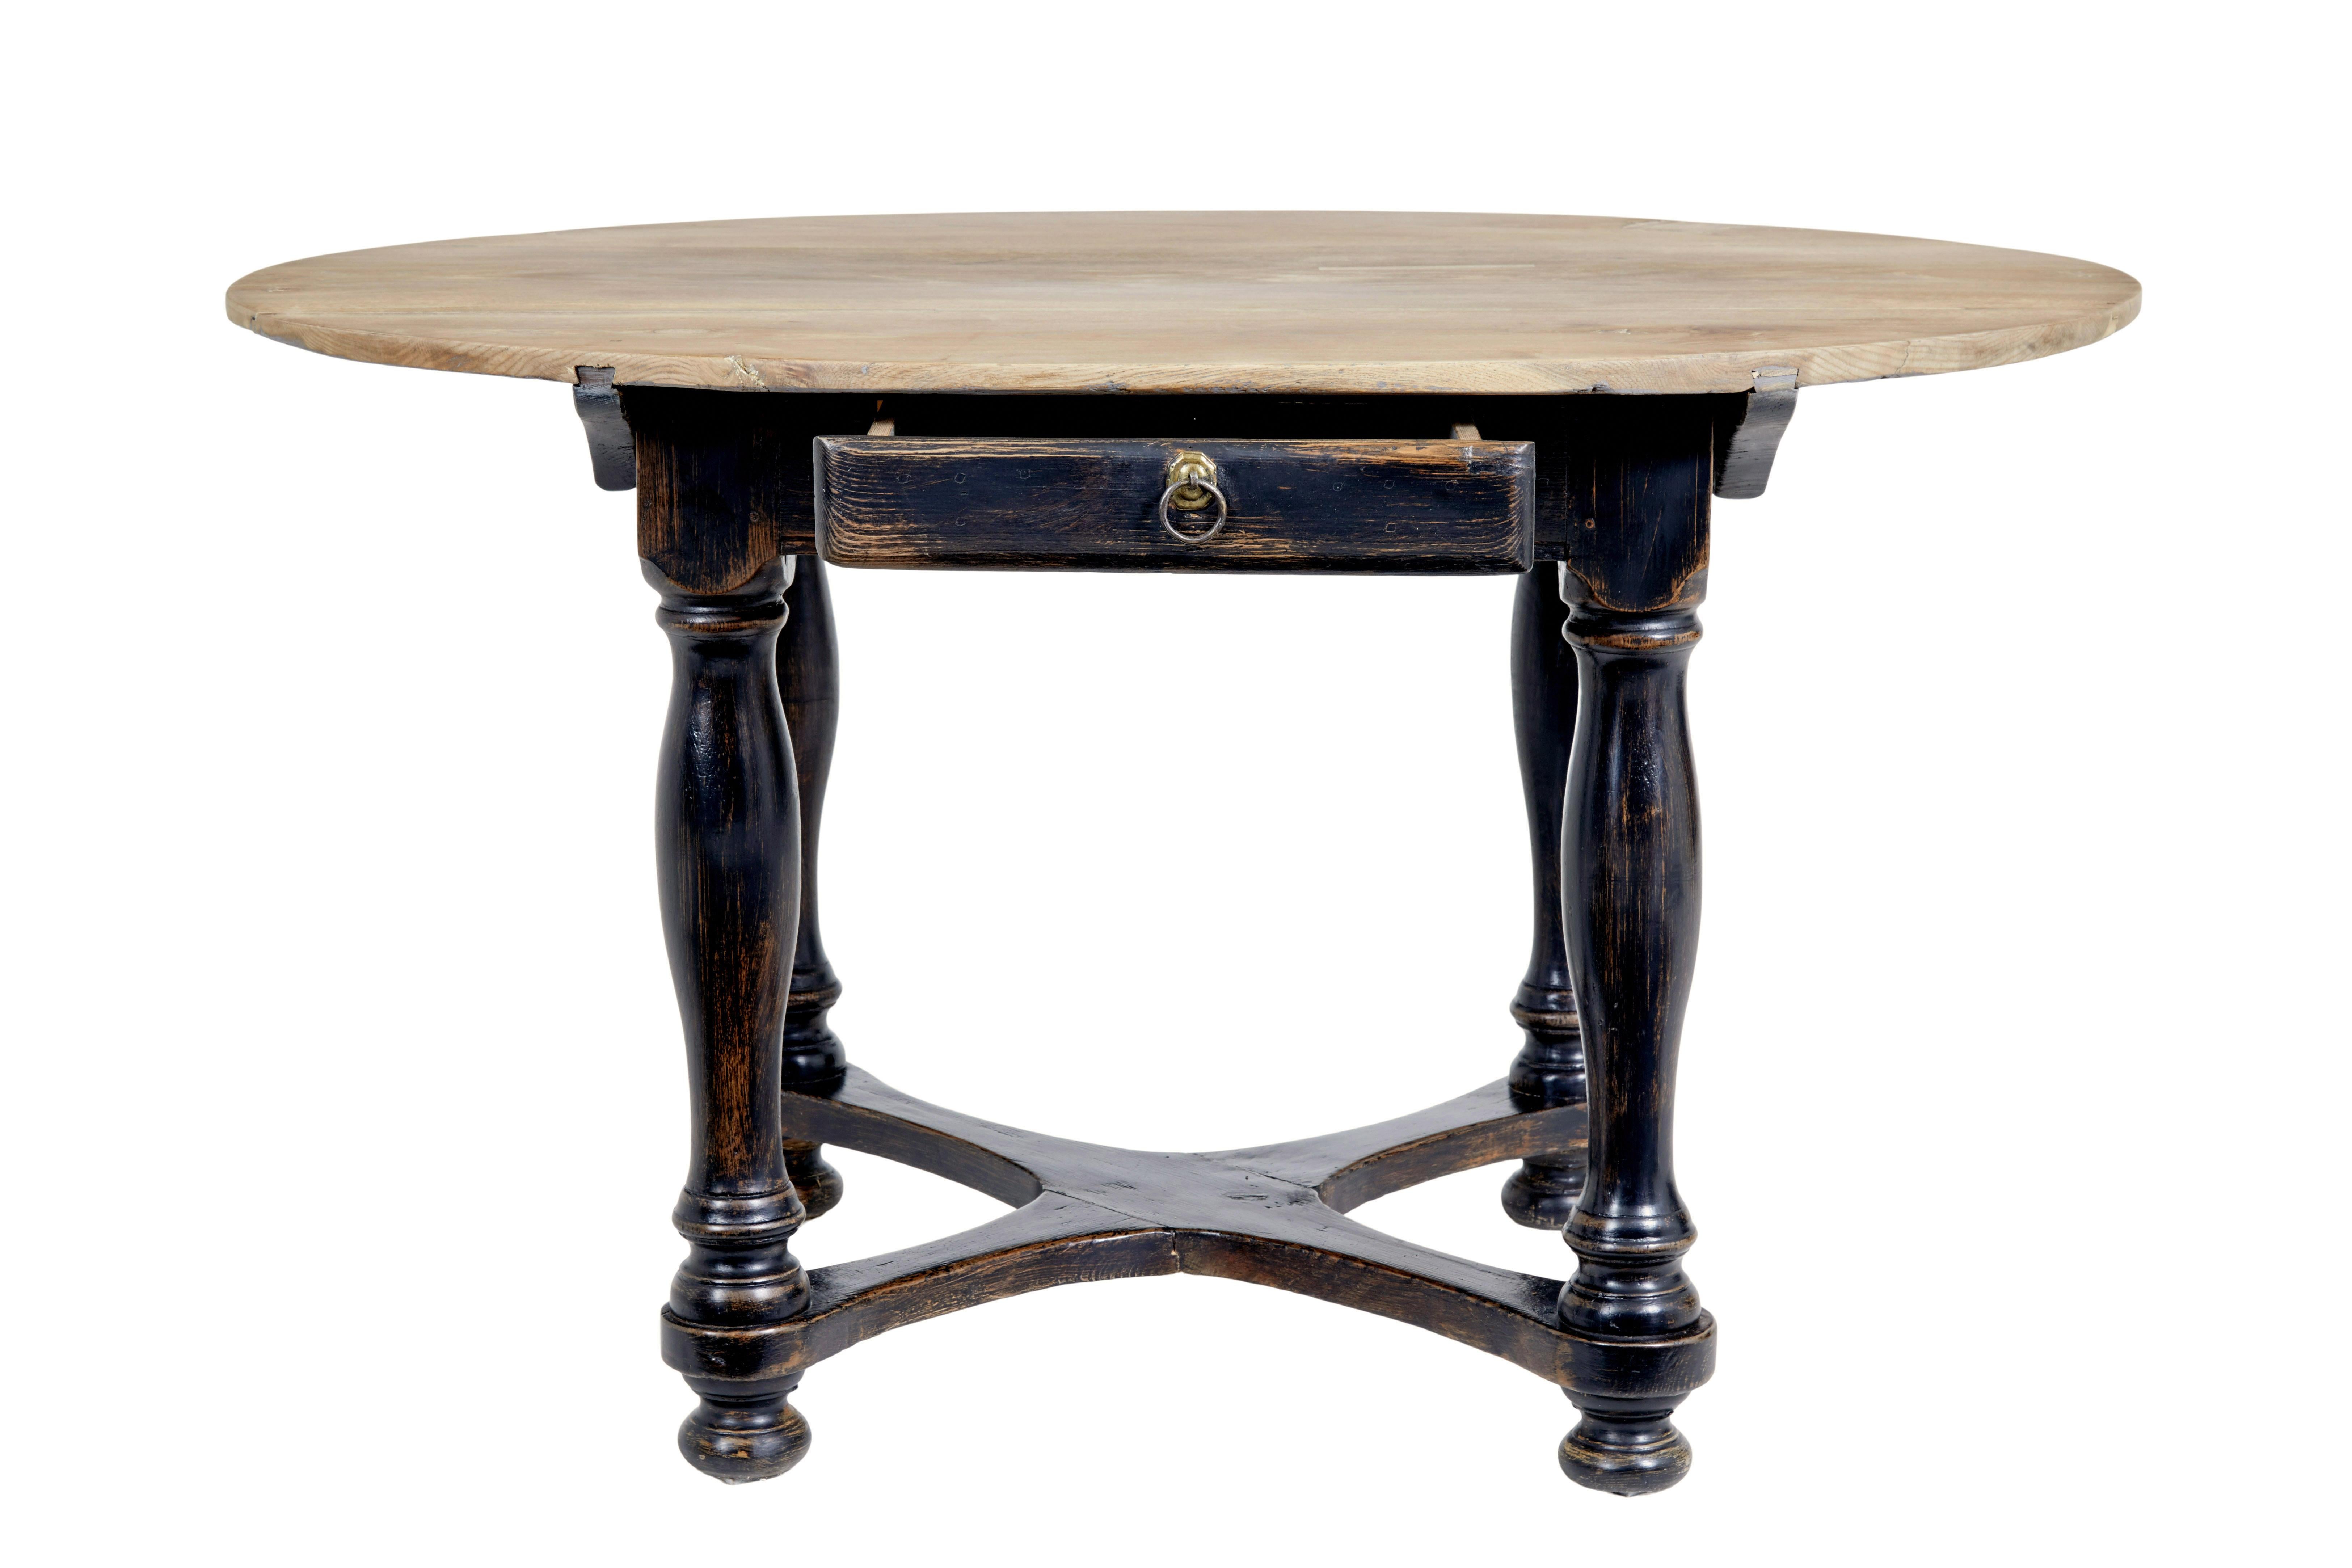 Beistelltisch aus bemalter Eiche, Mitte 19. Jahrhundert, um 1860.

Qualitativ hochwertiger Tisch mit vielfältigen Einsatzmöglichkeiten im Haushalt.  Kann auch als Esstisch in der Küche, als Mitteltisch oder als Sofatisch verwendet werden.

Ovale